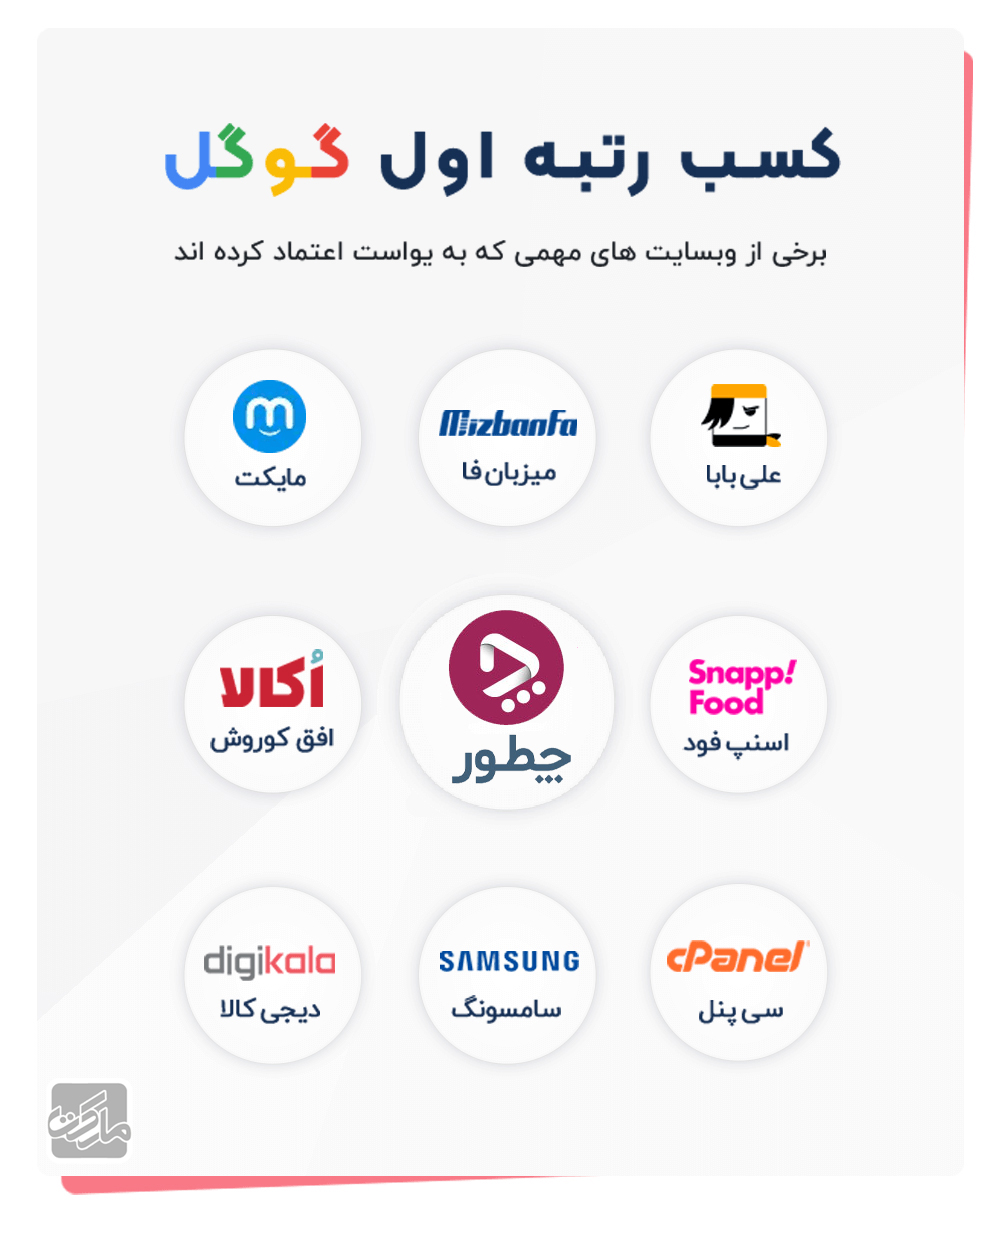 سایت های بزرگ ایرانی که از وردپرس و یوآست استفاده میکنند